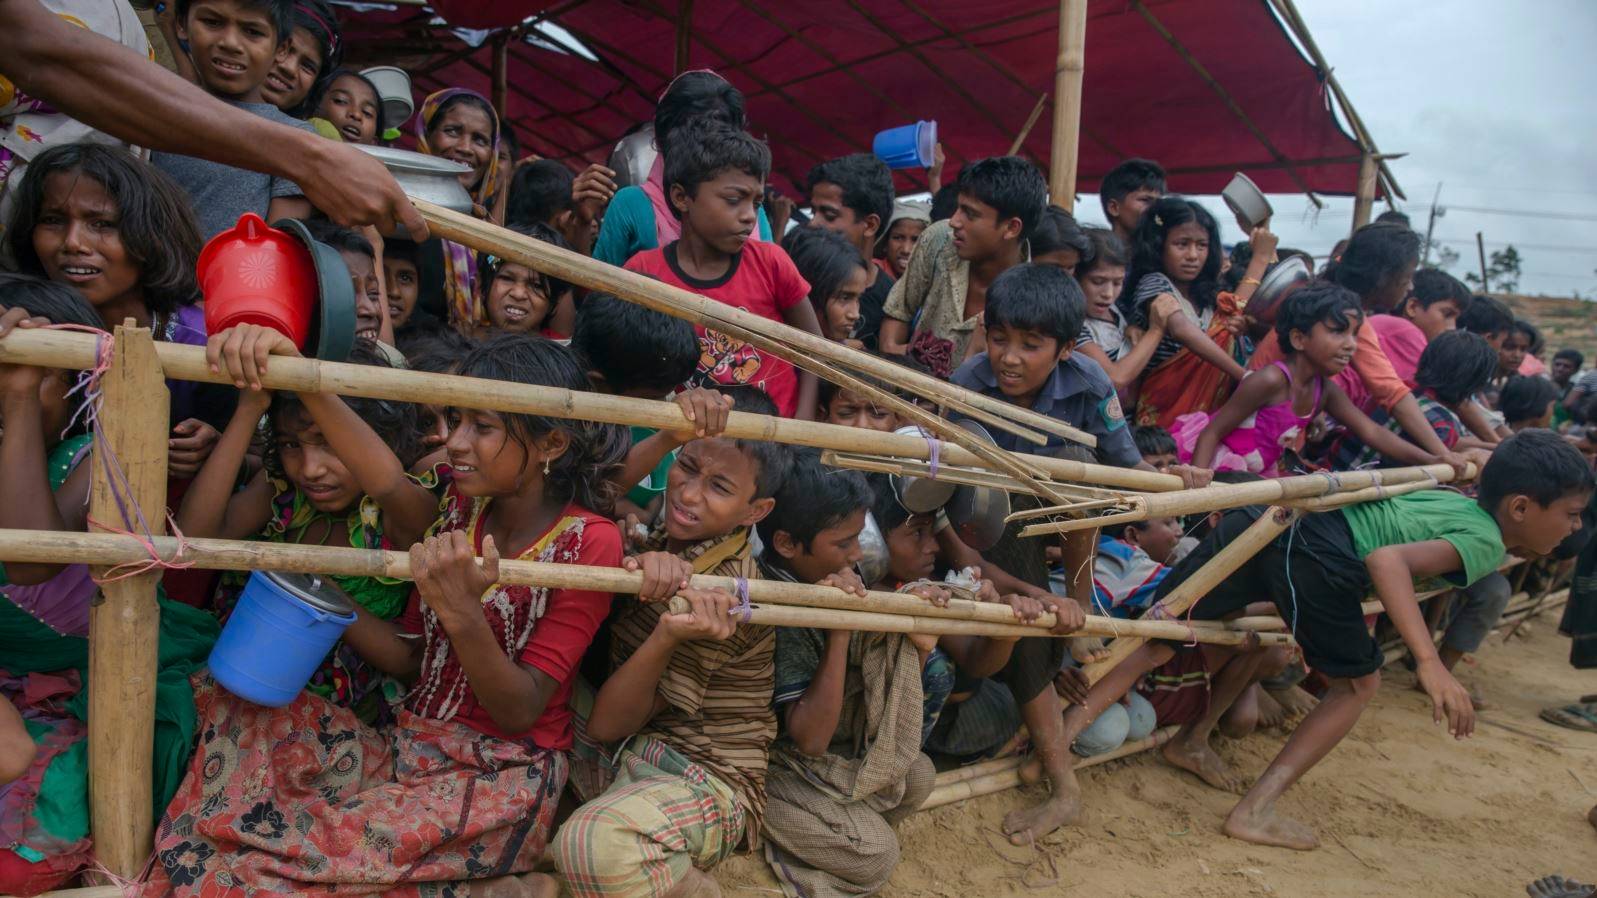 Дети рохинджа в столпотворении при раздаче гуманитарной помощи в лагере беженцев. Бангладеш. 2017 г.